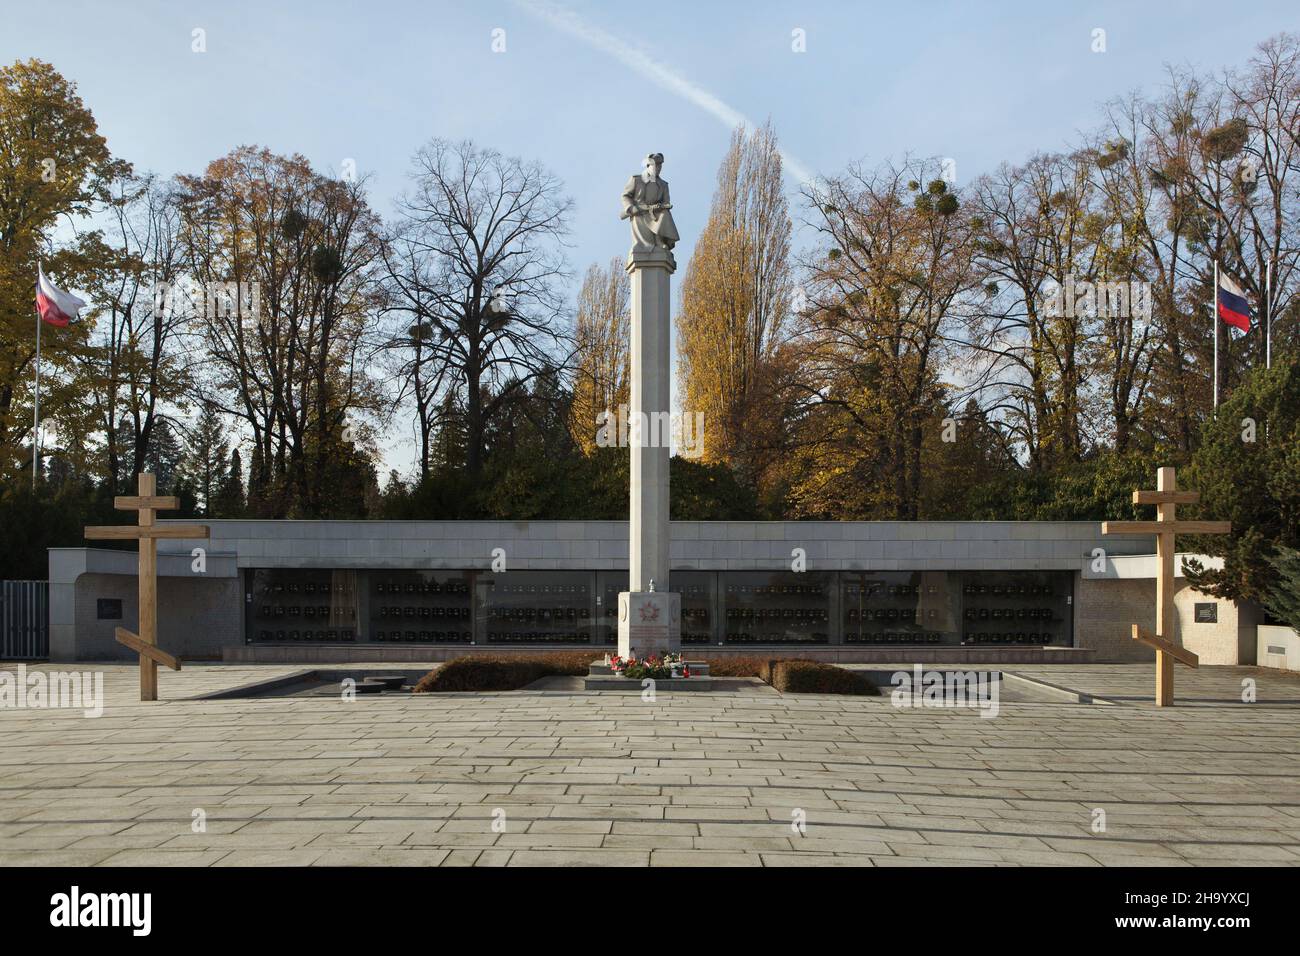 Memoriale di guerra sovietico al cimitero centrale (Ústřední hřbitov) a Brno, Repubblica Ceca. Tombe di massa dei soldati dell'esercito rosso caduti durante la seconda guerra mondiale sono situate sul terreno del Memoriale di guerra sovietico. Foto Stock